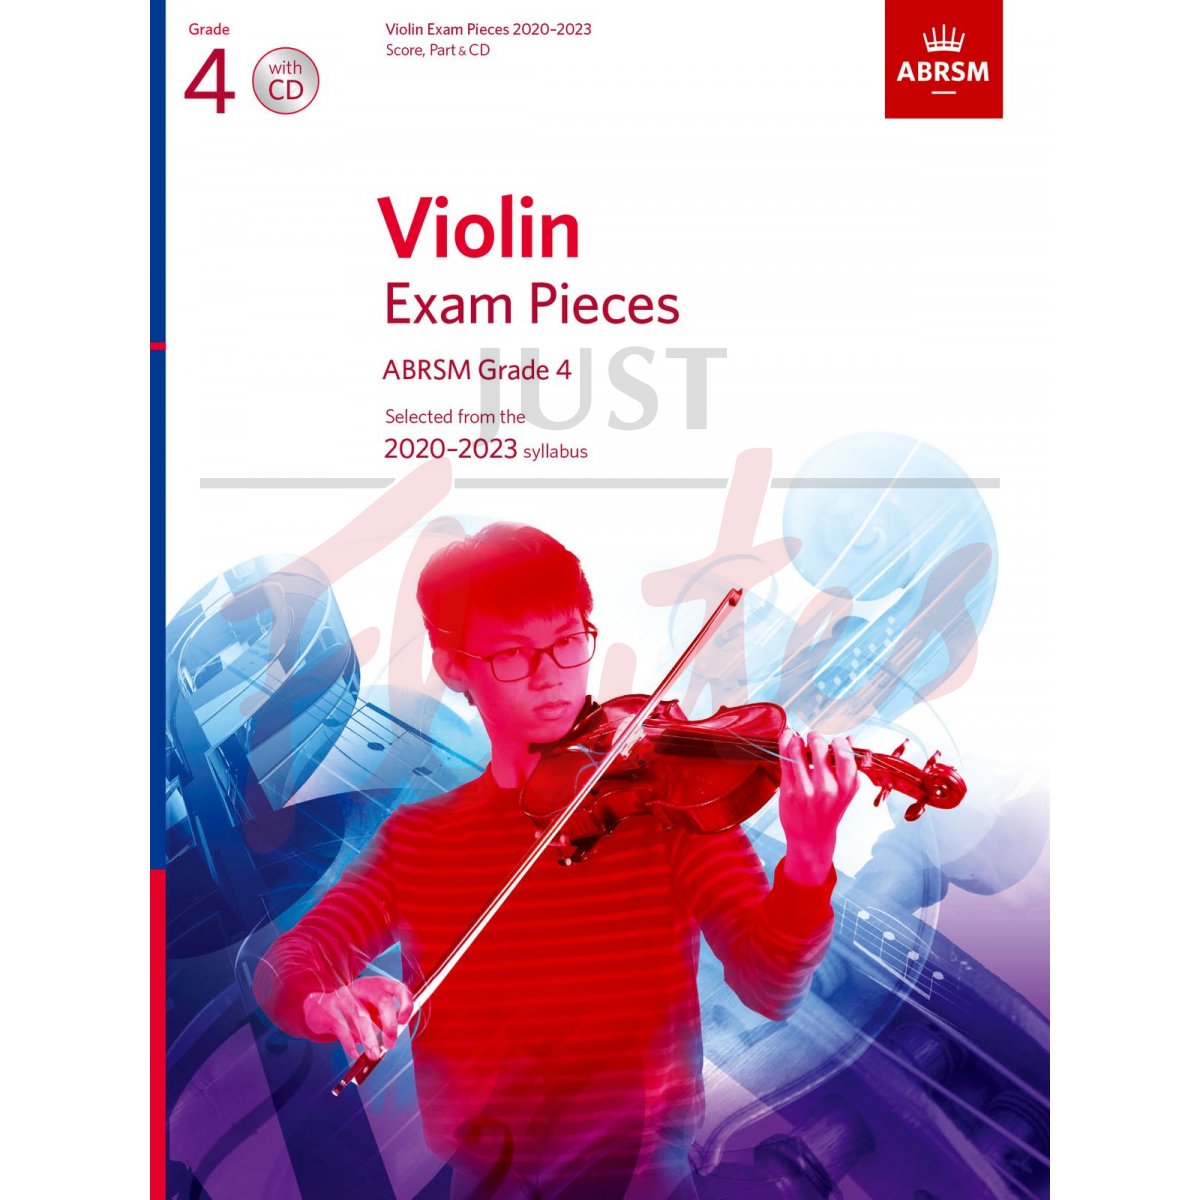 Violin Exam Pieces 2020-2023, Grade 4